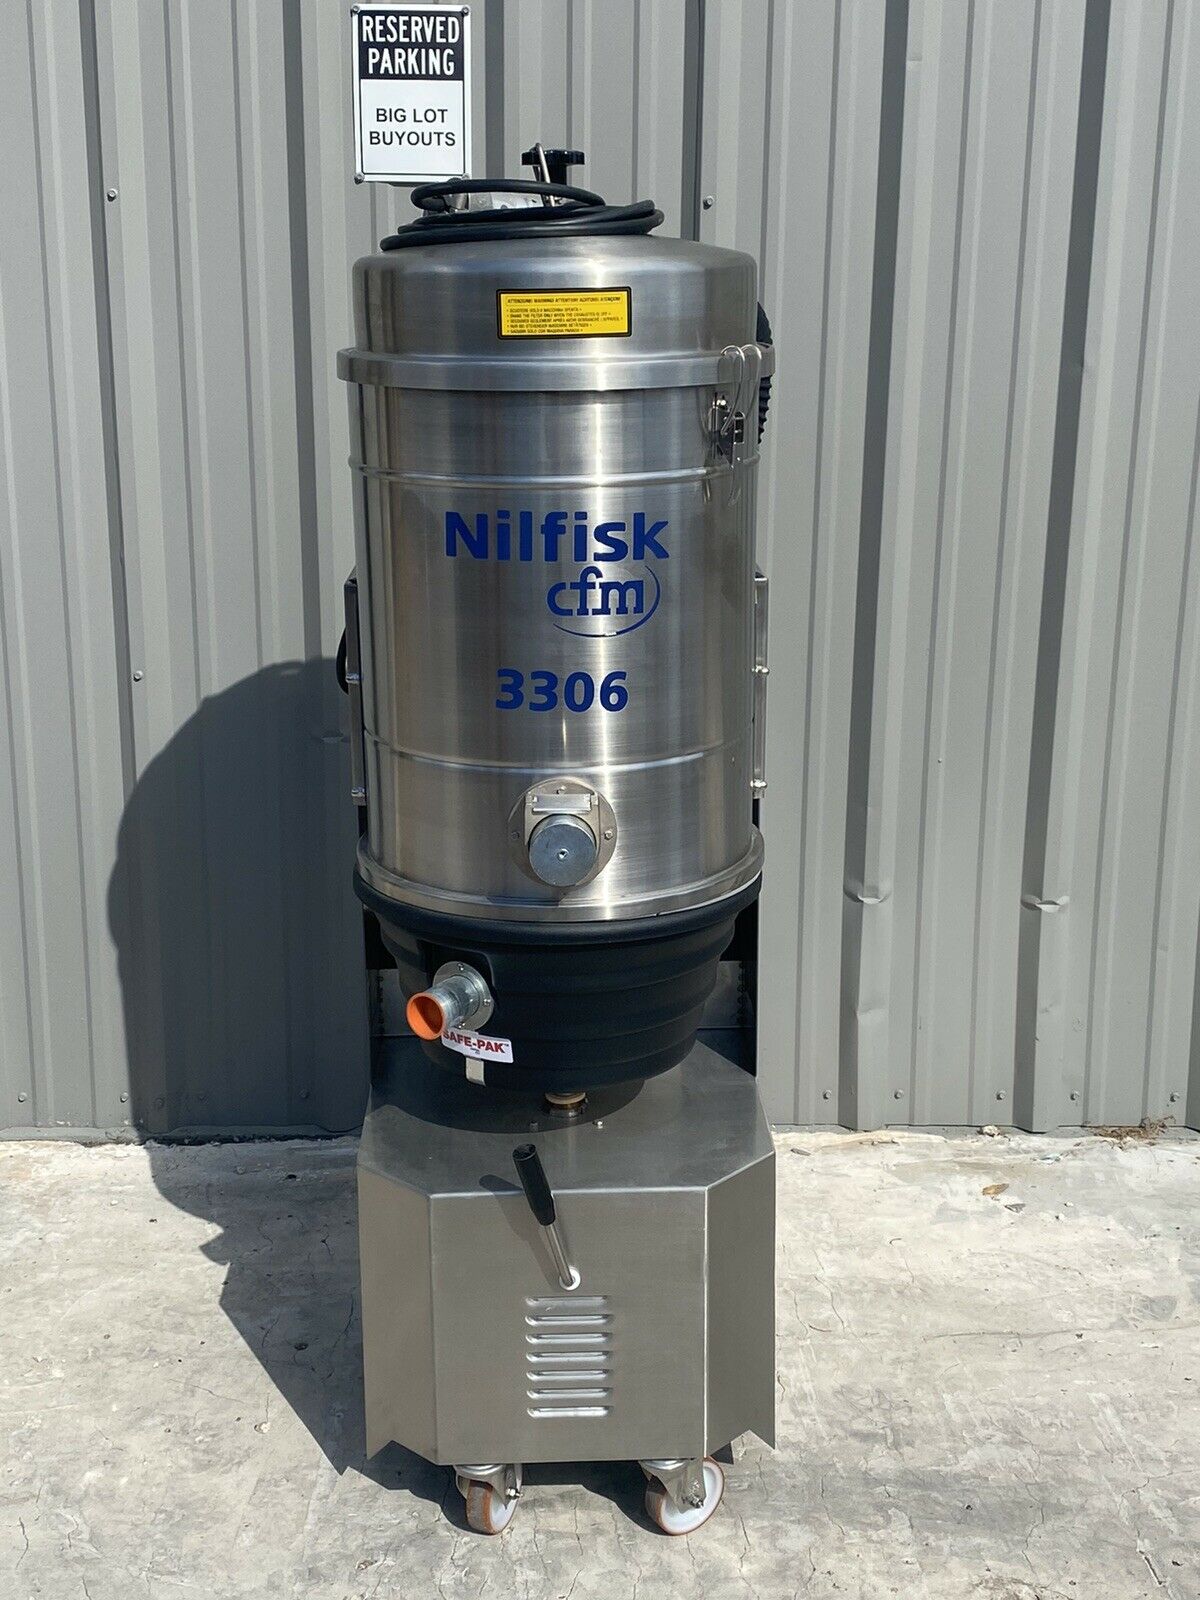 Nilfisk Cfm 3306 Stainless Steel Industrial Dry Vacuum 12.6-gallon 48l, 208v